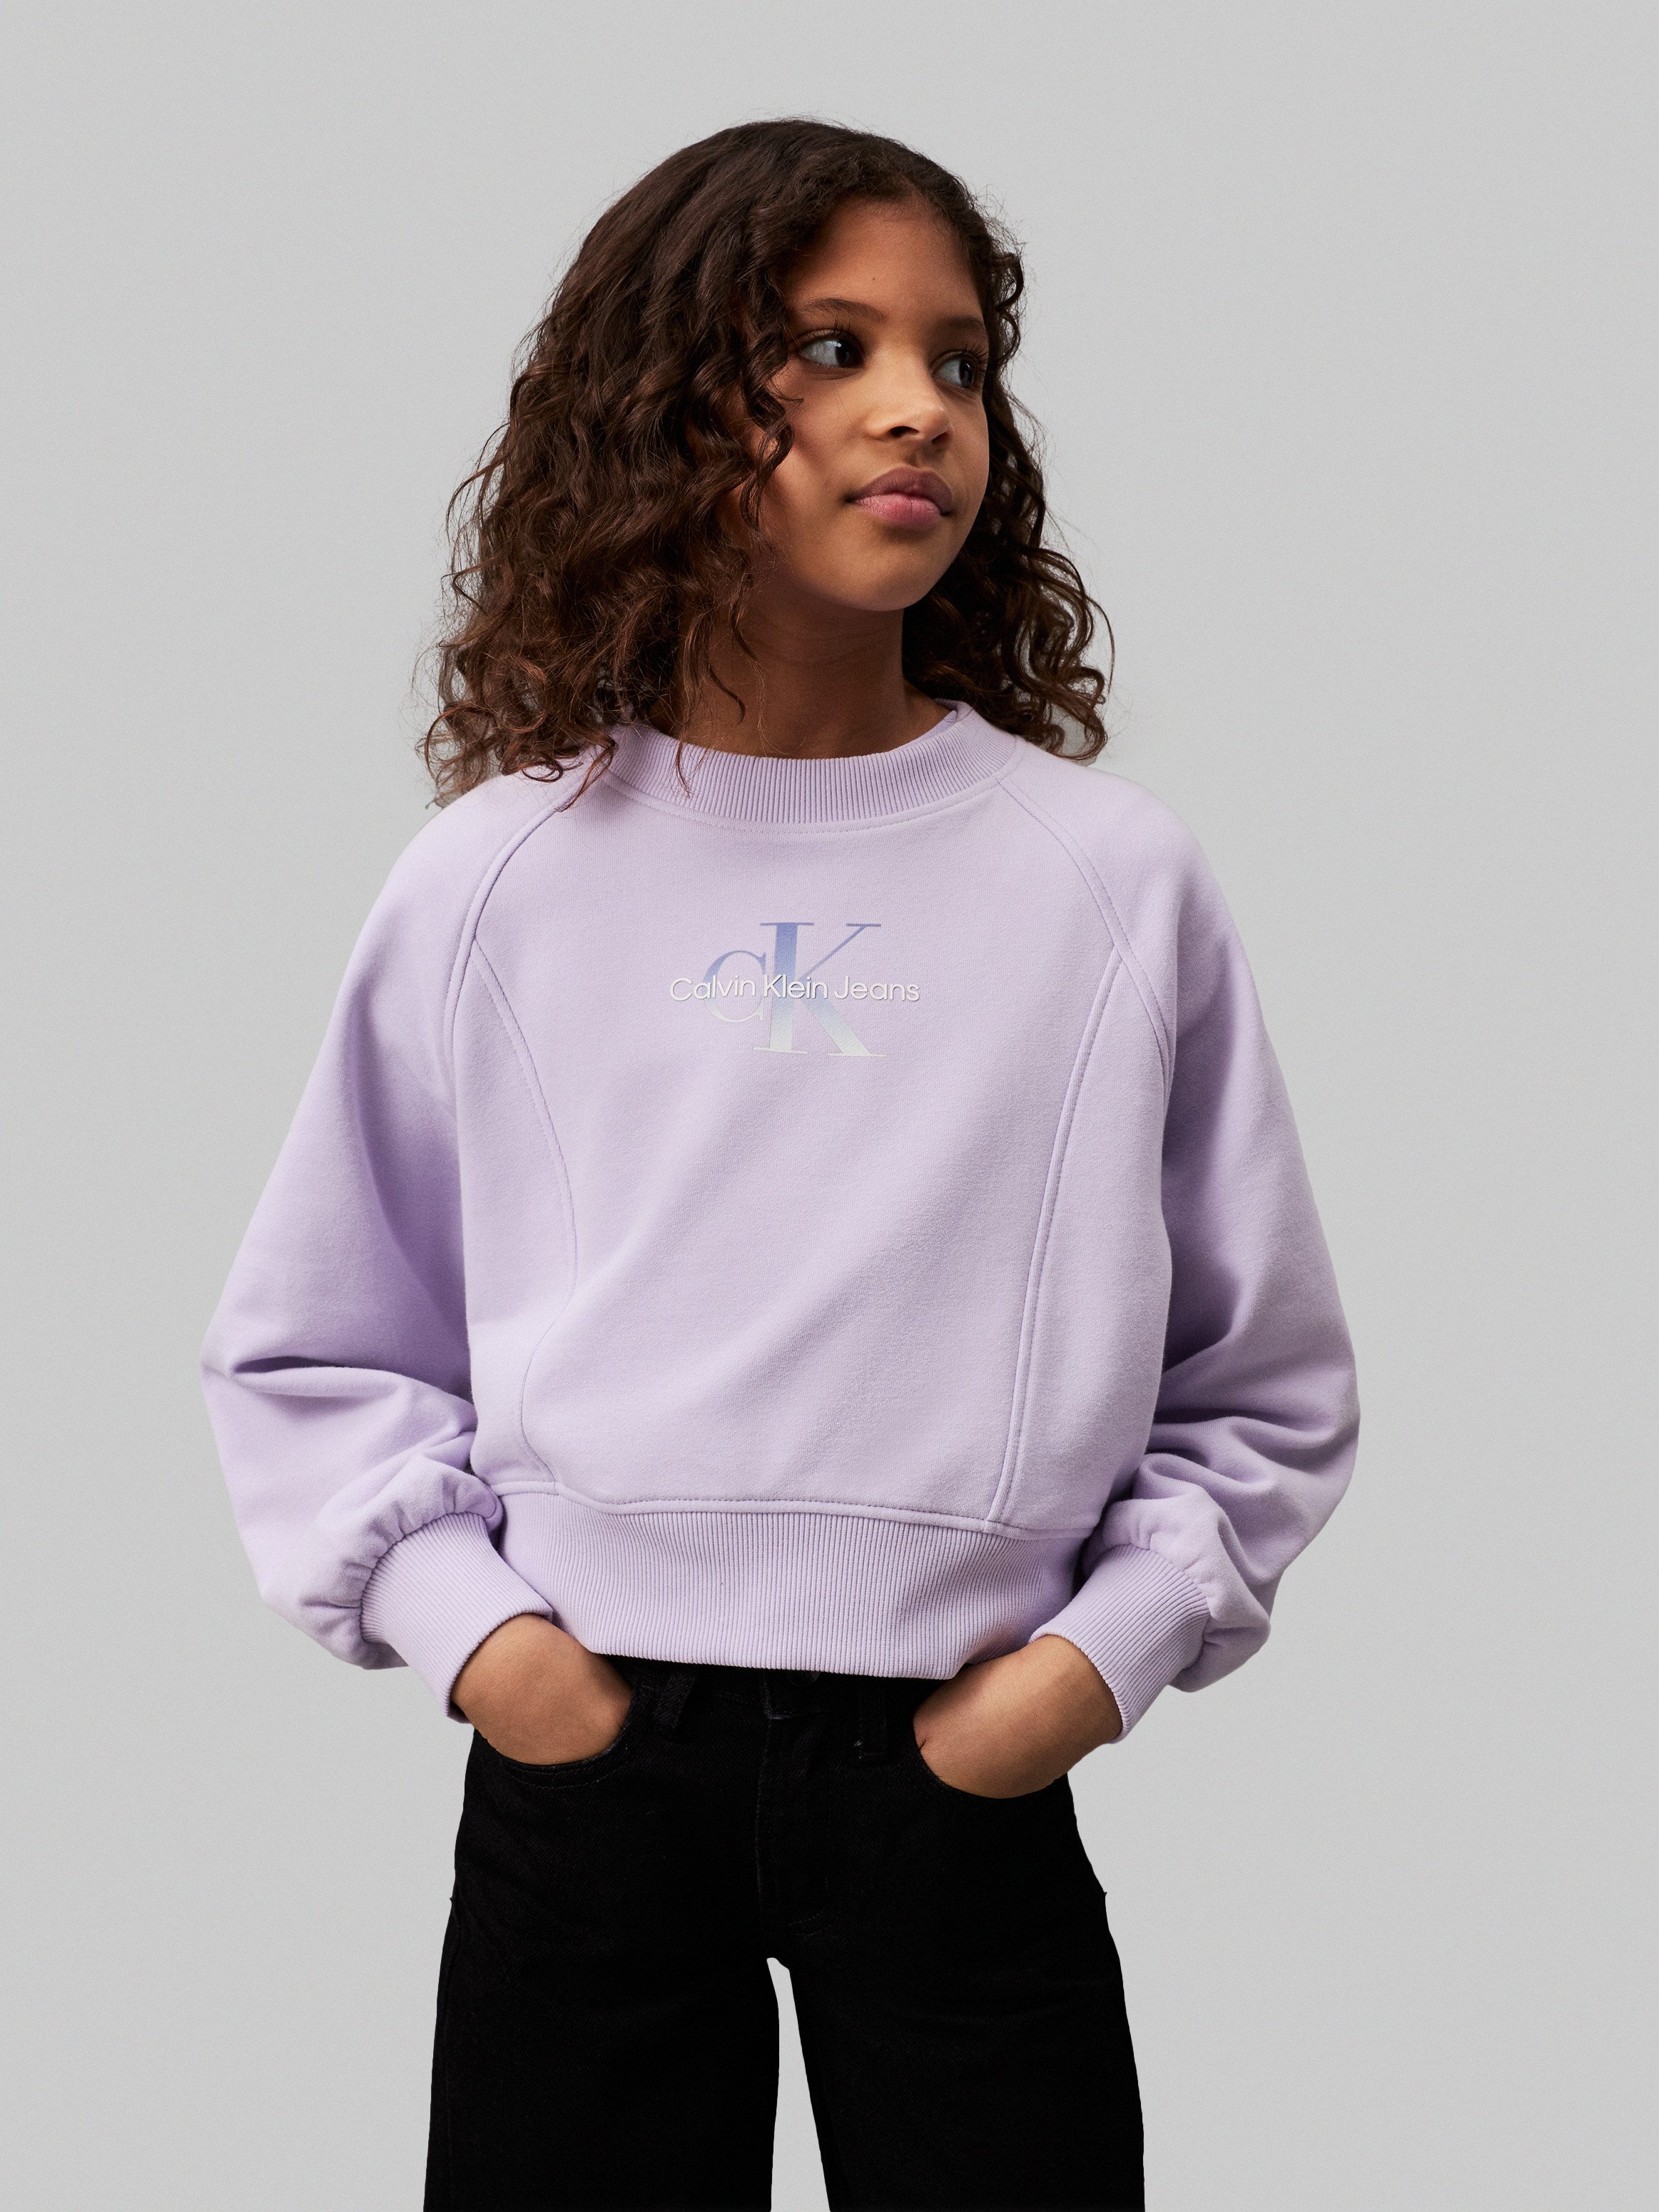 Calvin Klein Jeans Sweatshirt GRADIENT MONOGRAM CN SWEATSHIRT für Kinder bis 16 Jahre